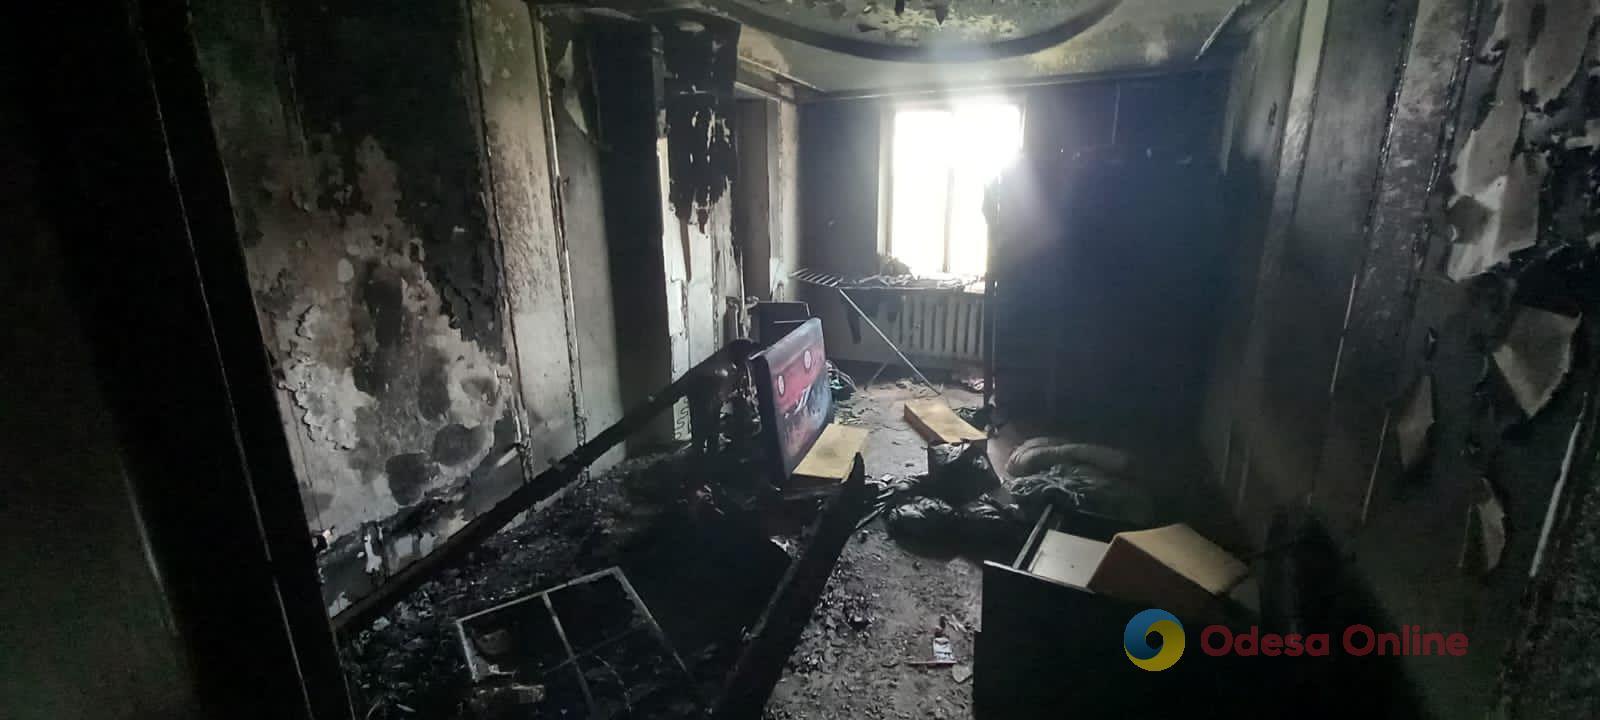 В Одесской области мужчина поджег квартиру, которую арендовала его бывшая девушка